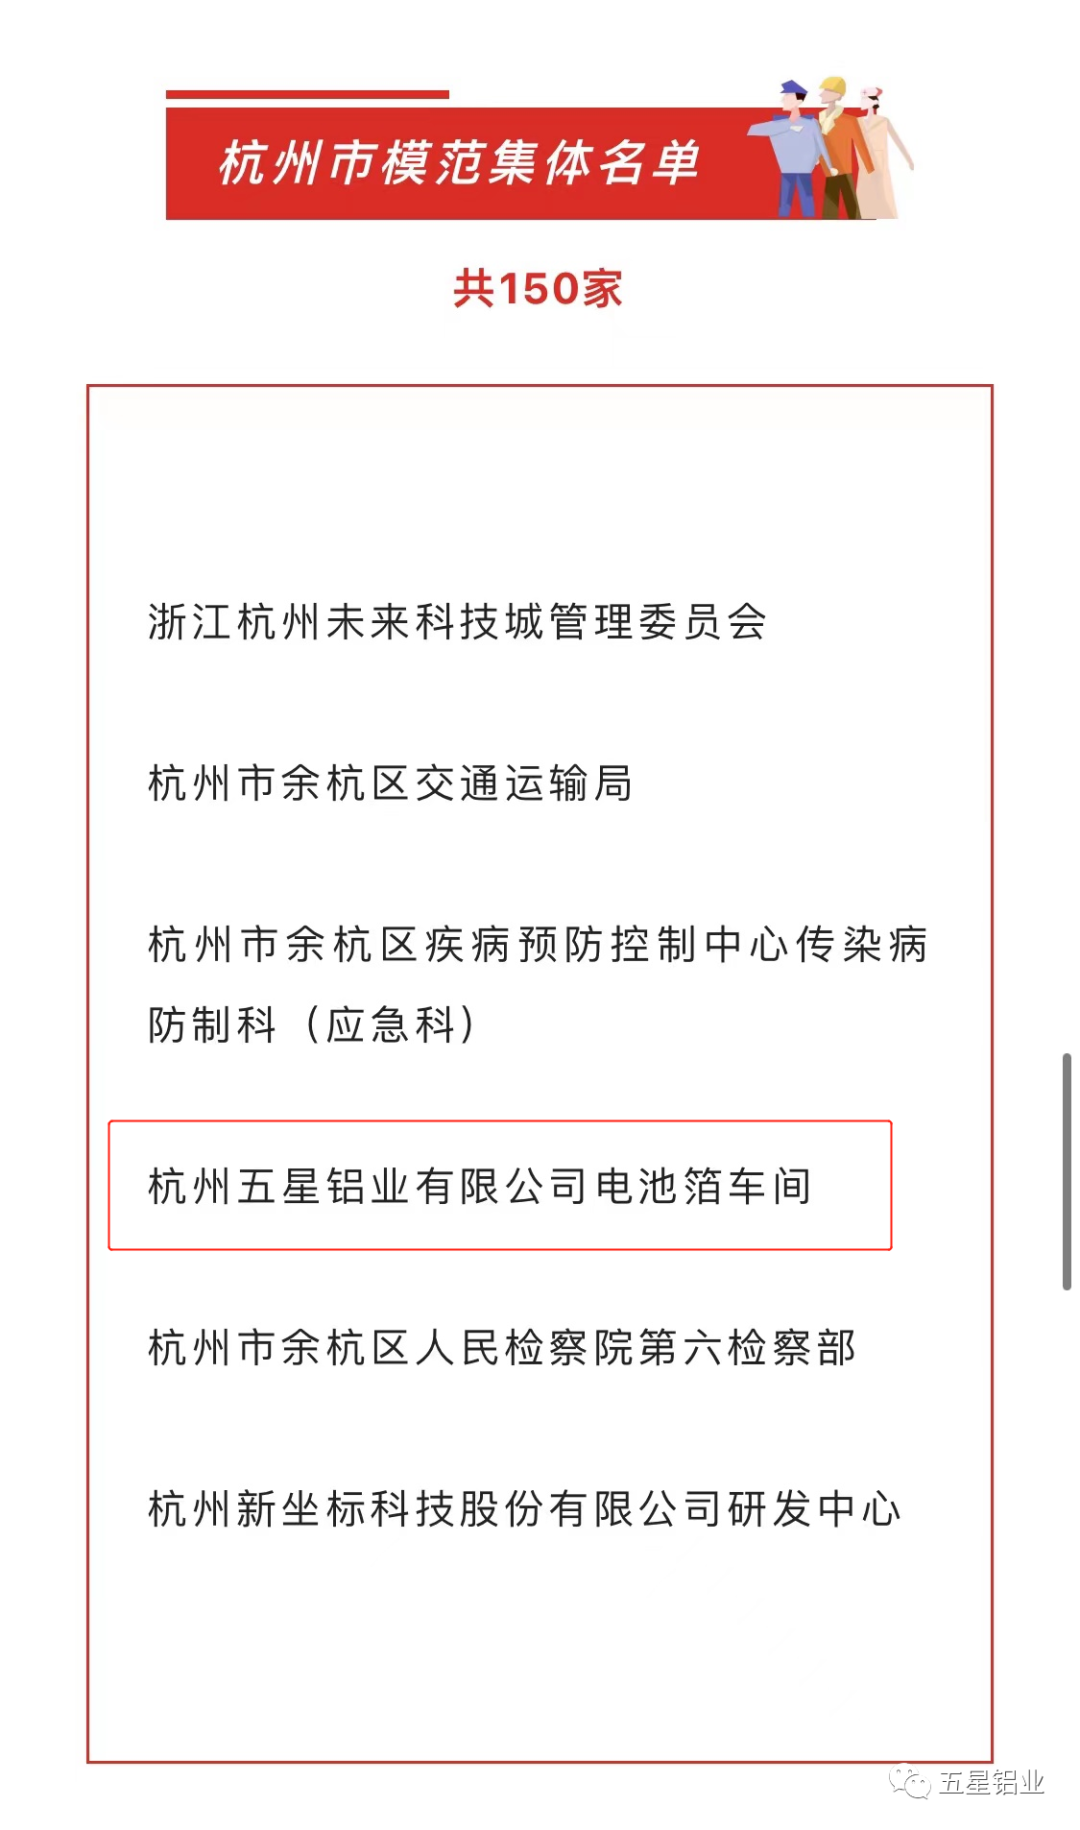 杭州五星鋁業有限公司電池箔車間獲評“杭州市模範集體” 